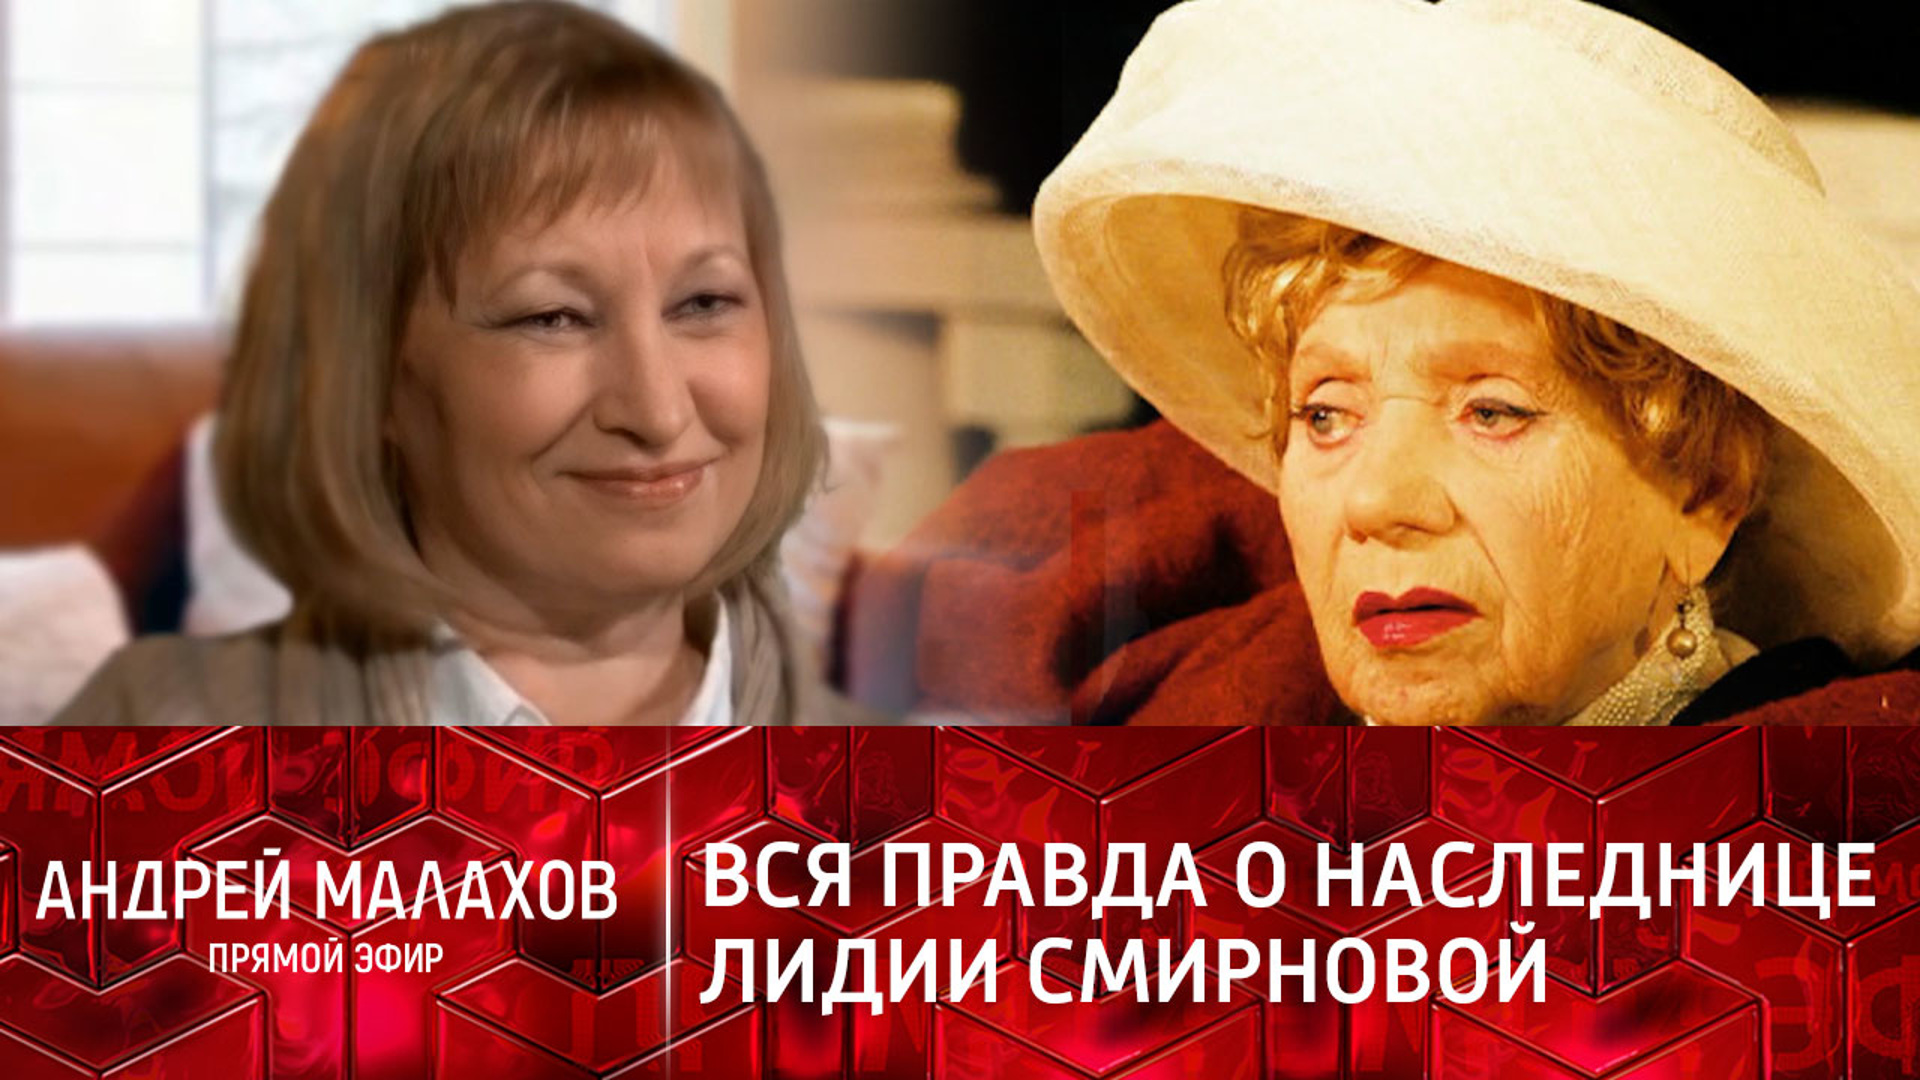 Сериал наследницы Лидия Смирнова